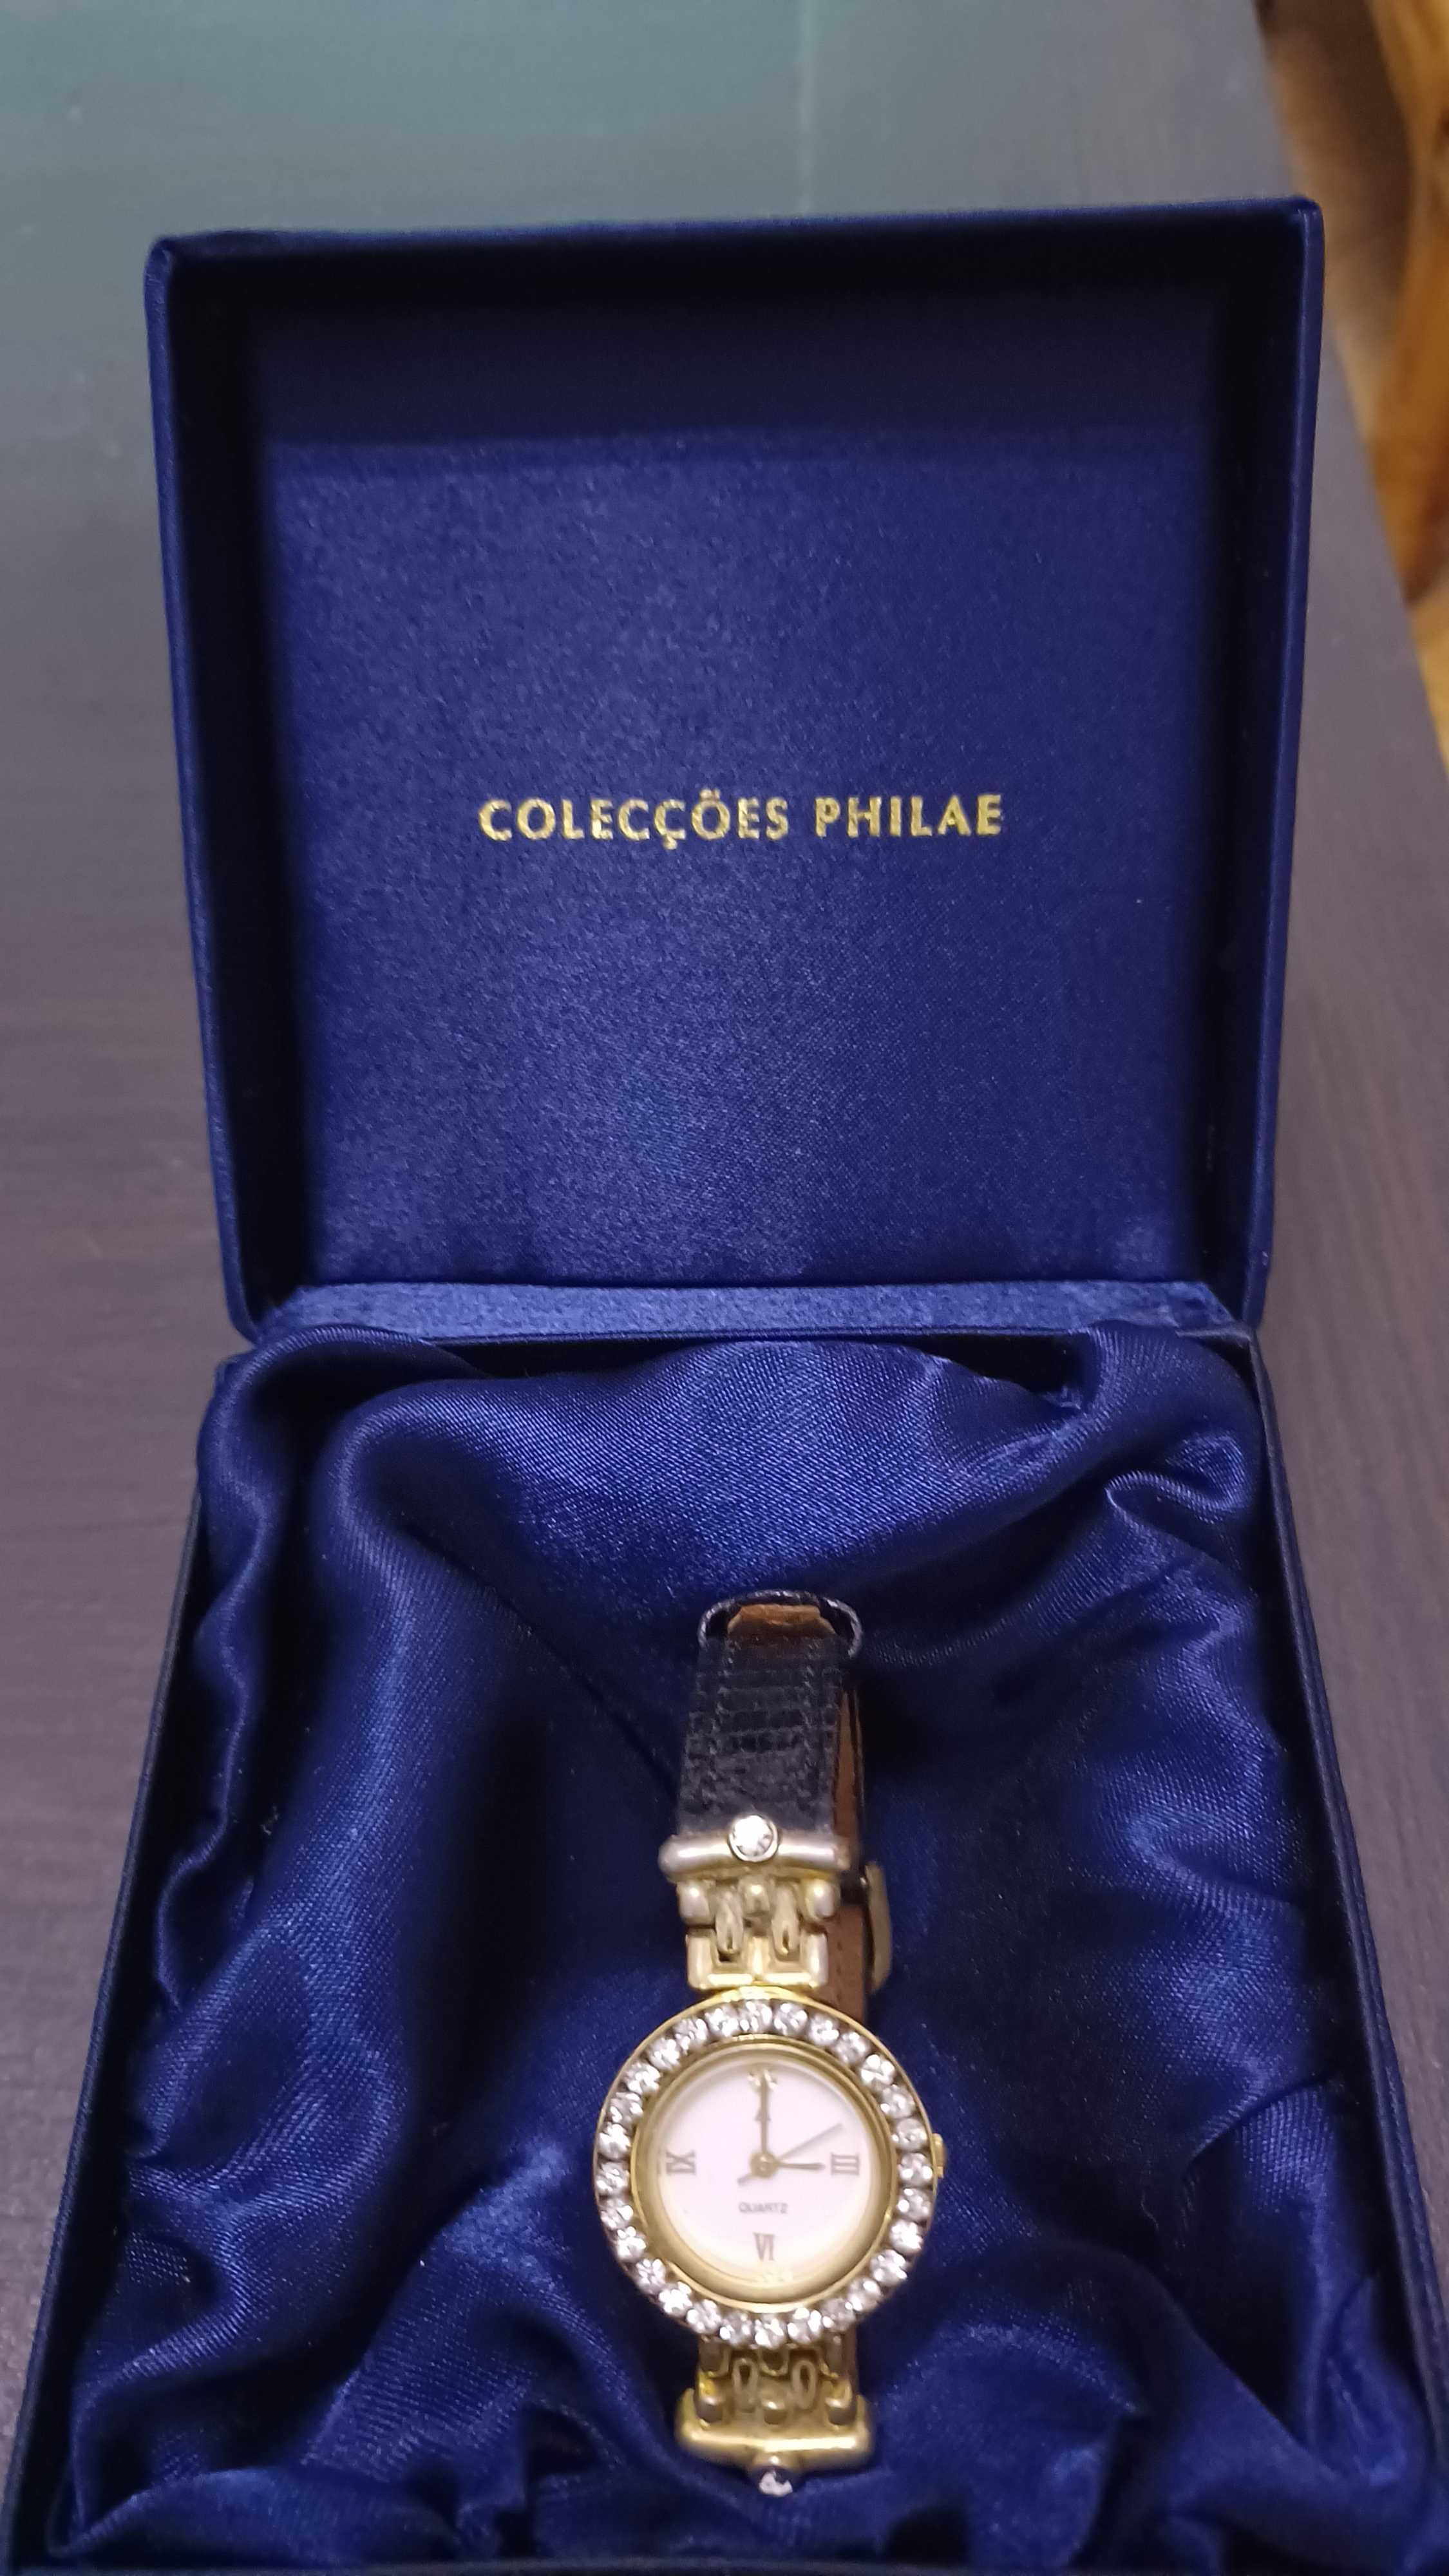 Relógio com cristais coleções philae